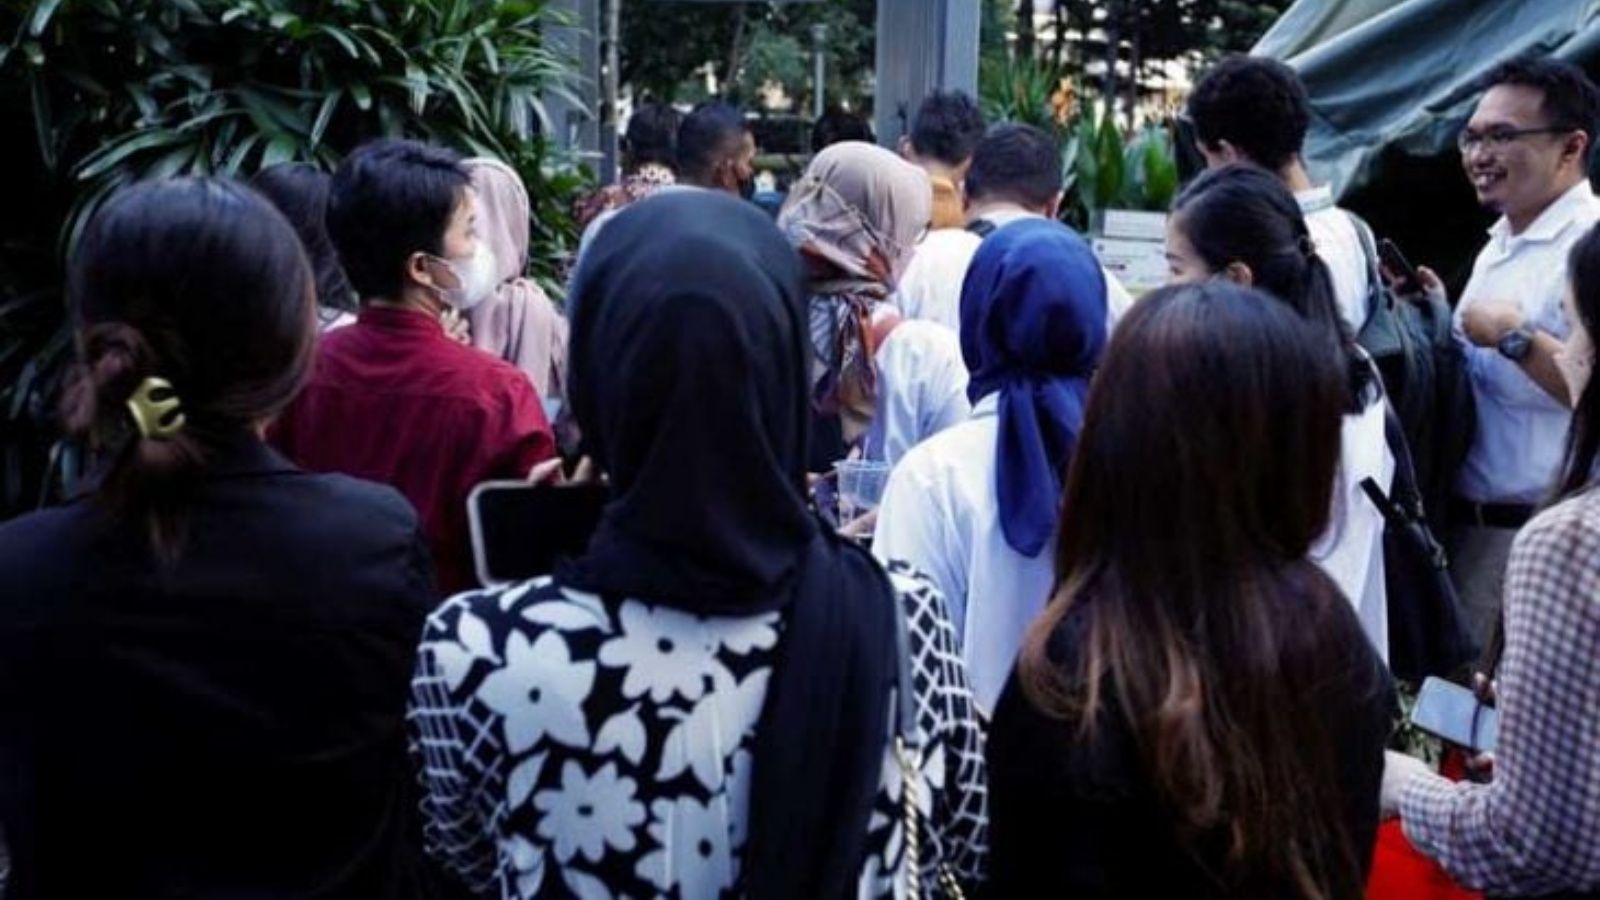 إندونيسيون ينتظرون خارج مبنى إداري بعد زلزال ضرب جزيرة جاوا الإندونيسية